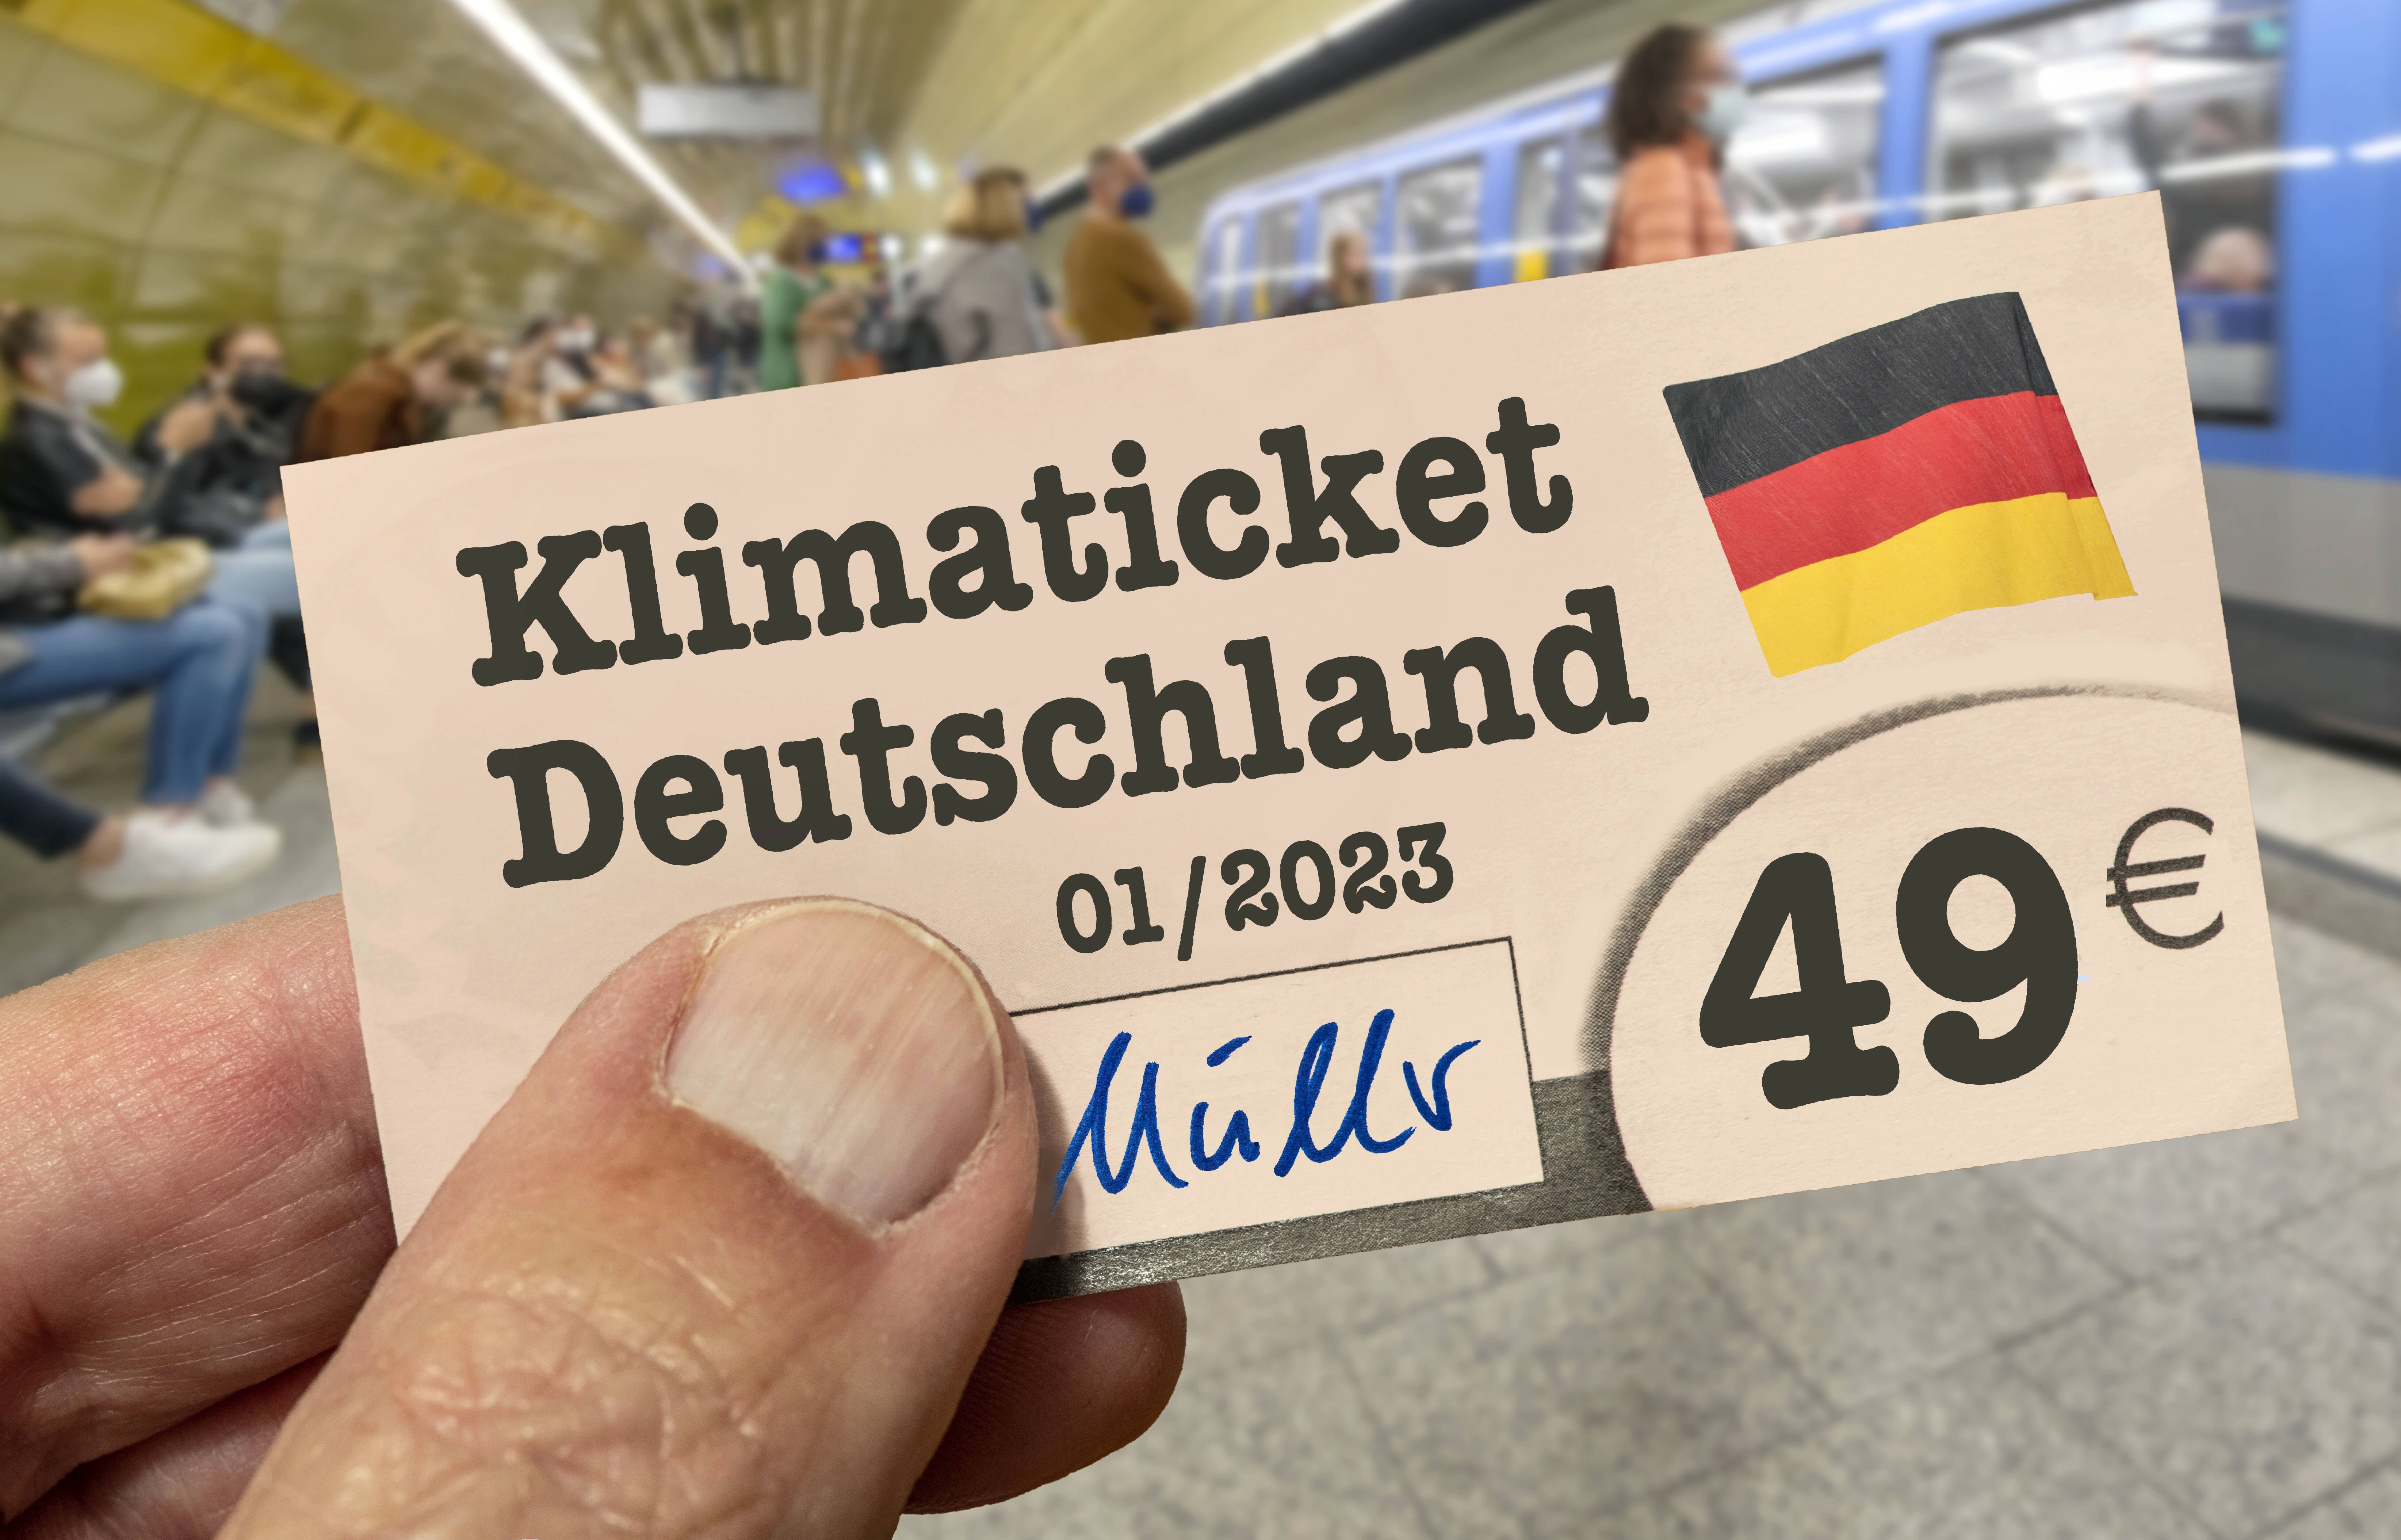 49-euro-ticket-offiziell-bundesweites-ticket-soll-schnellstm-glich